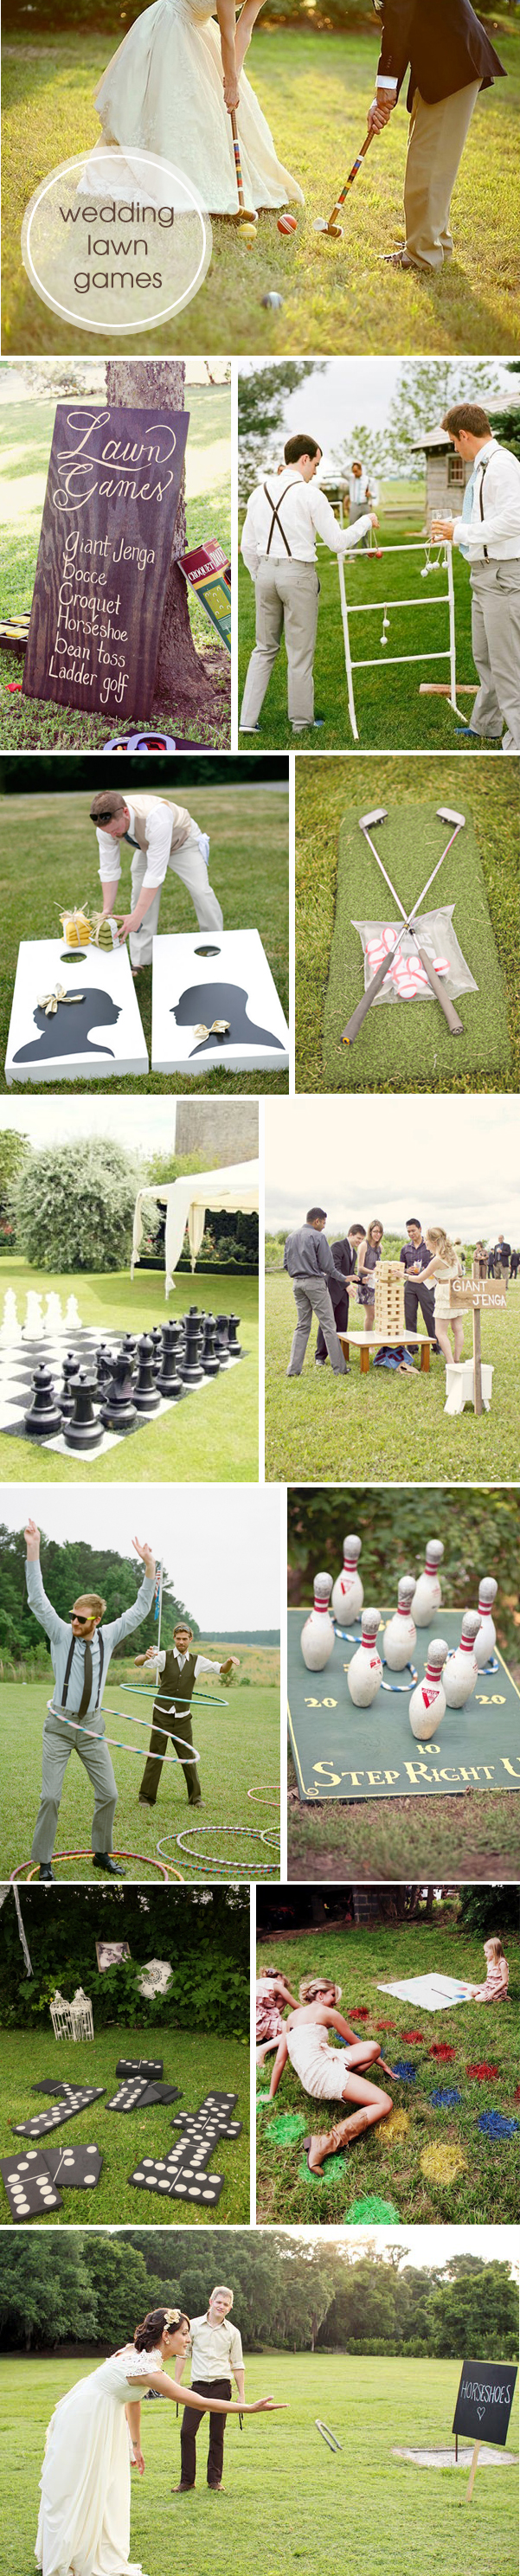 ST_wedding_lawn_games